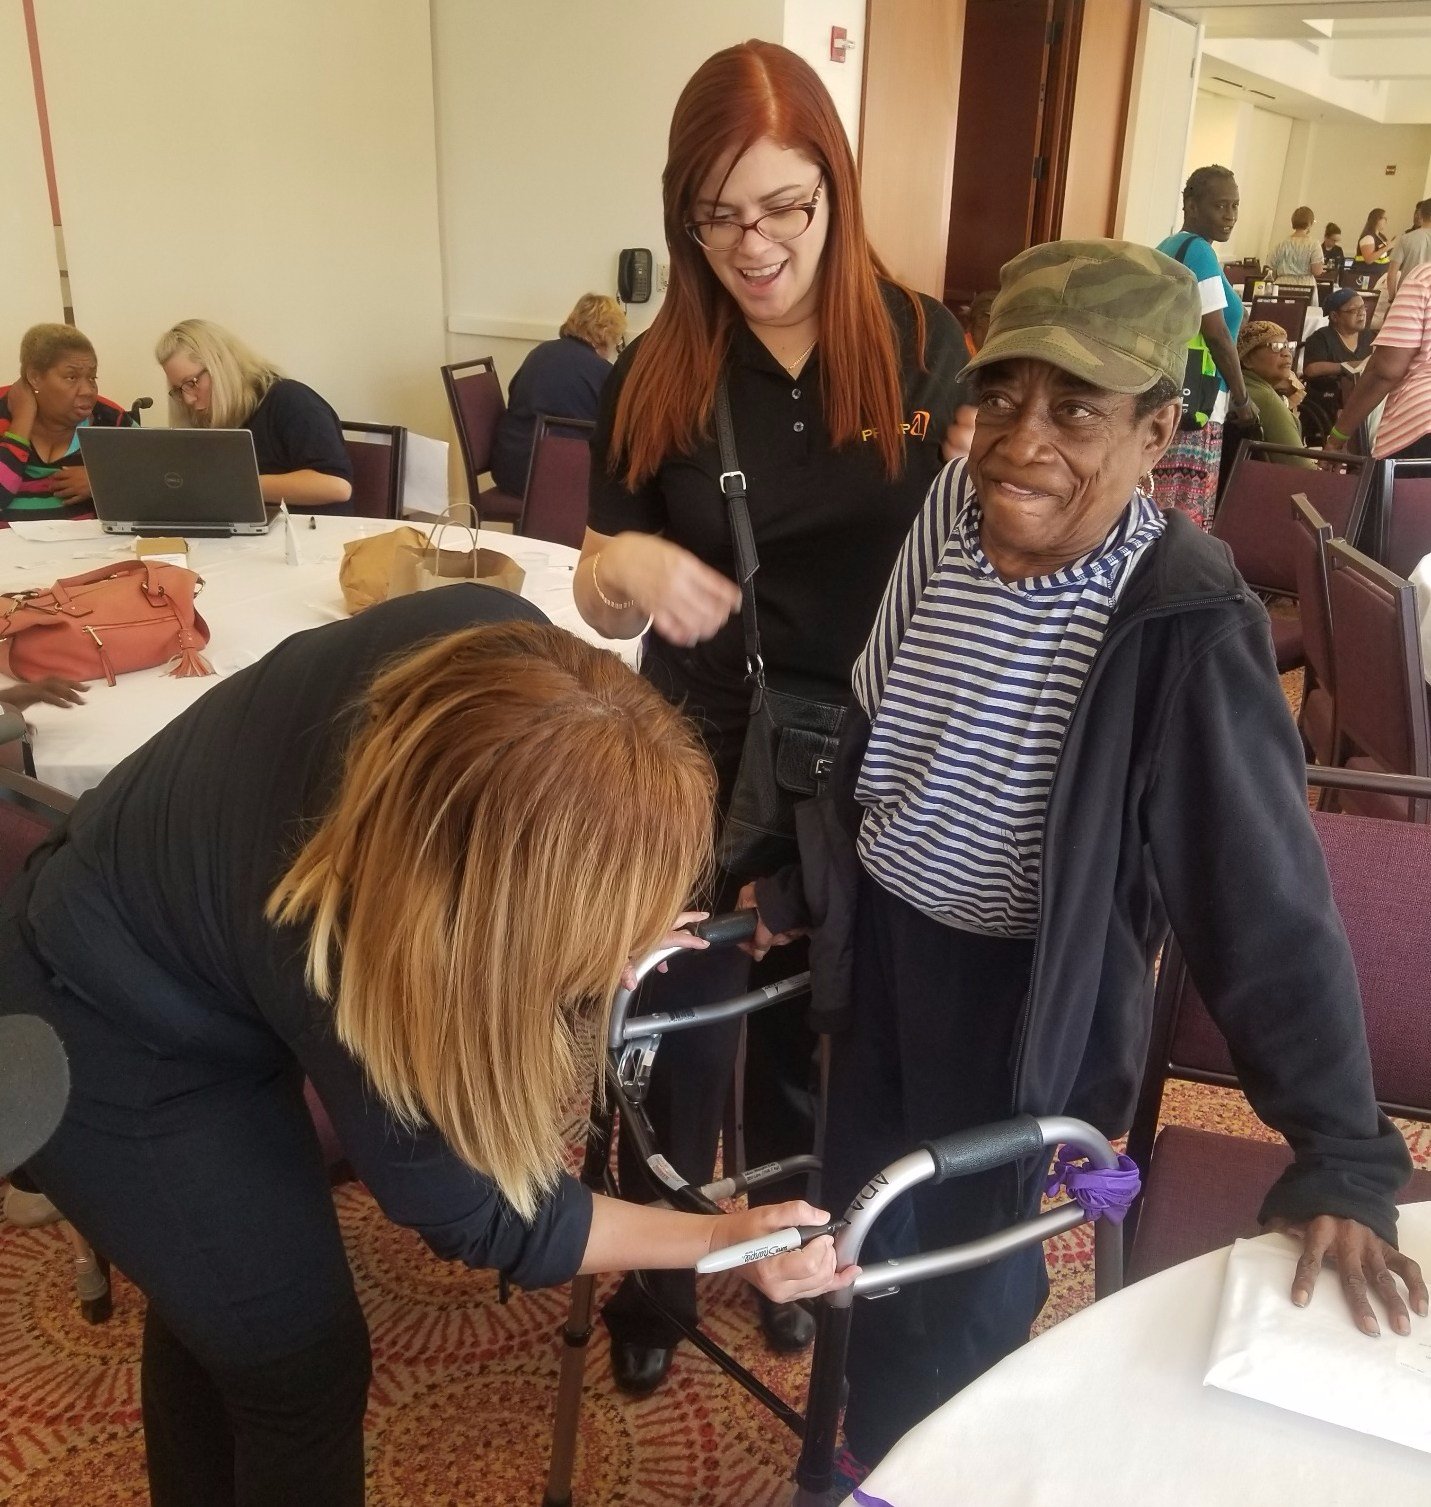 Una mujer refugiada del huracán caribeño con un andador recibe ayuda para equiparse de dos mujeres en la sala de un centro de conferencias.